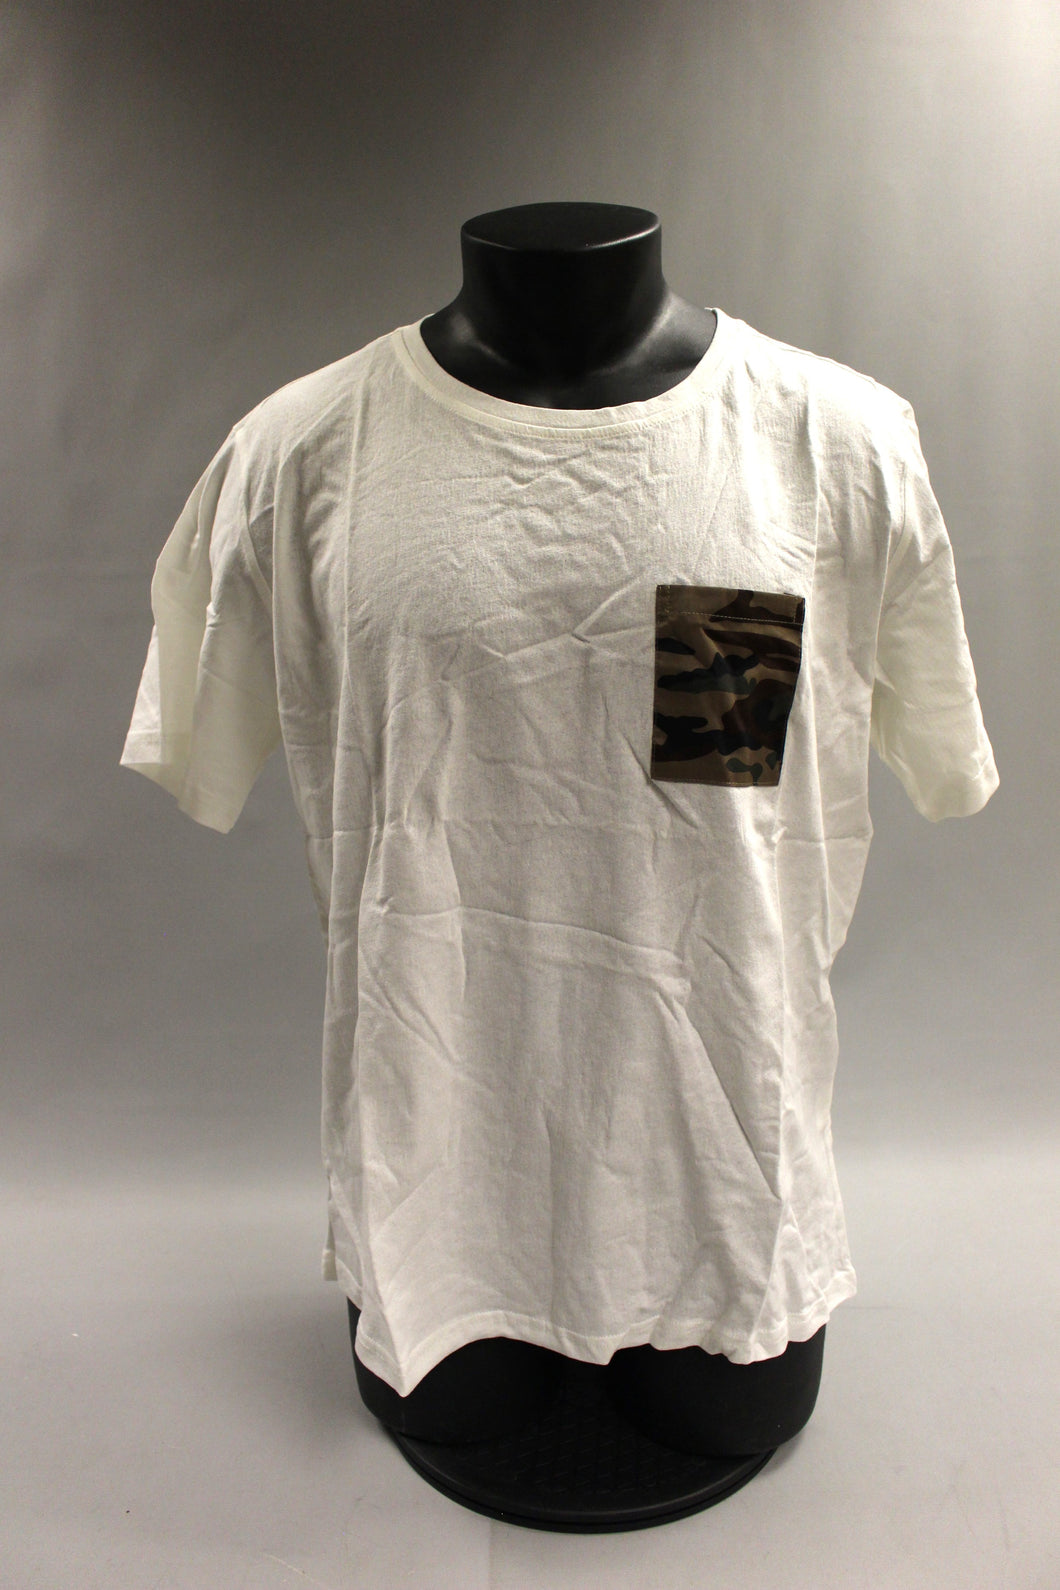 Hemiks Men's Cream Camouflage Pocket T-Shirt - Large - Short Sleeve - New